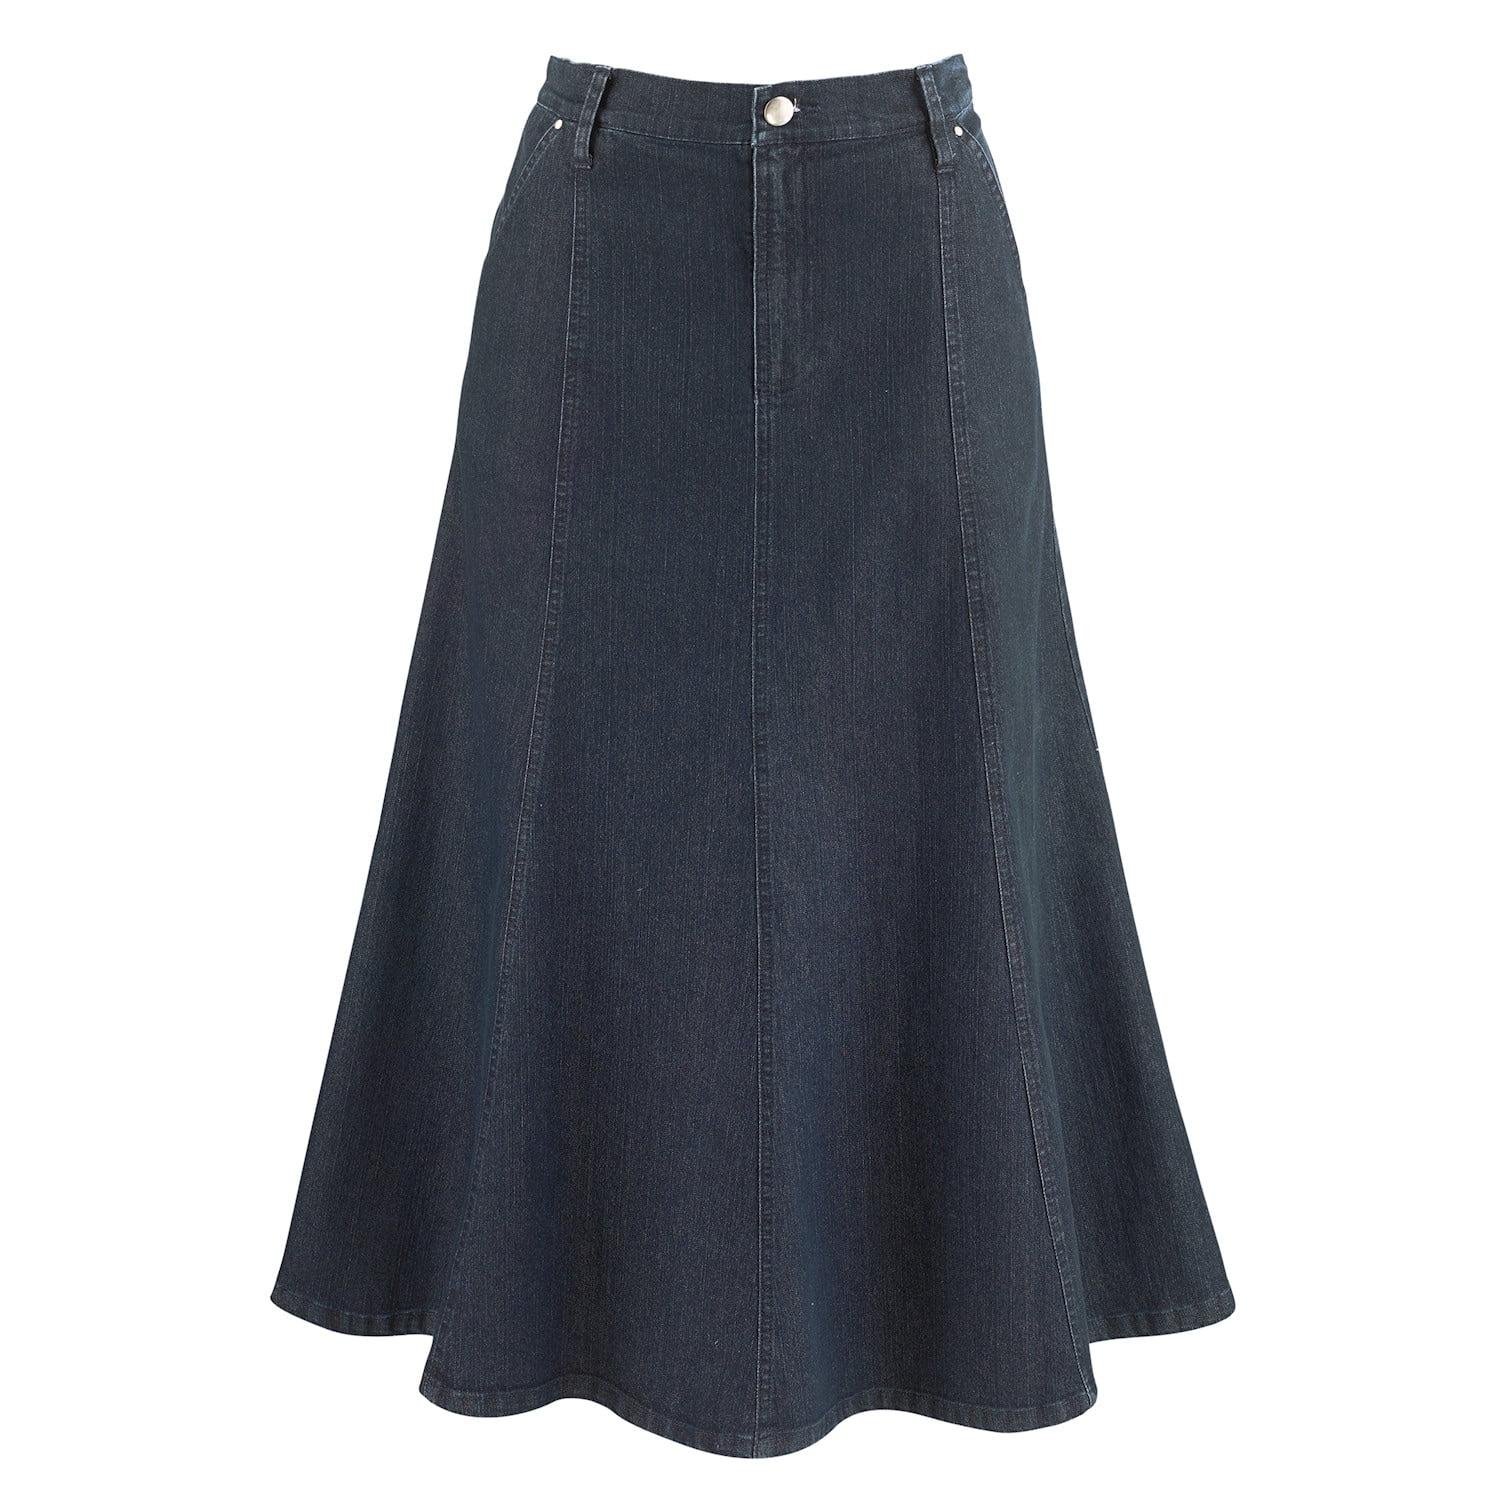 CATALOG CLASSICS Womens Long Denim Skirt Blue Jean Skirts for Women ...